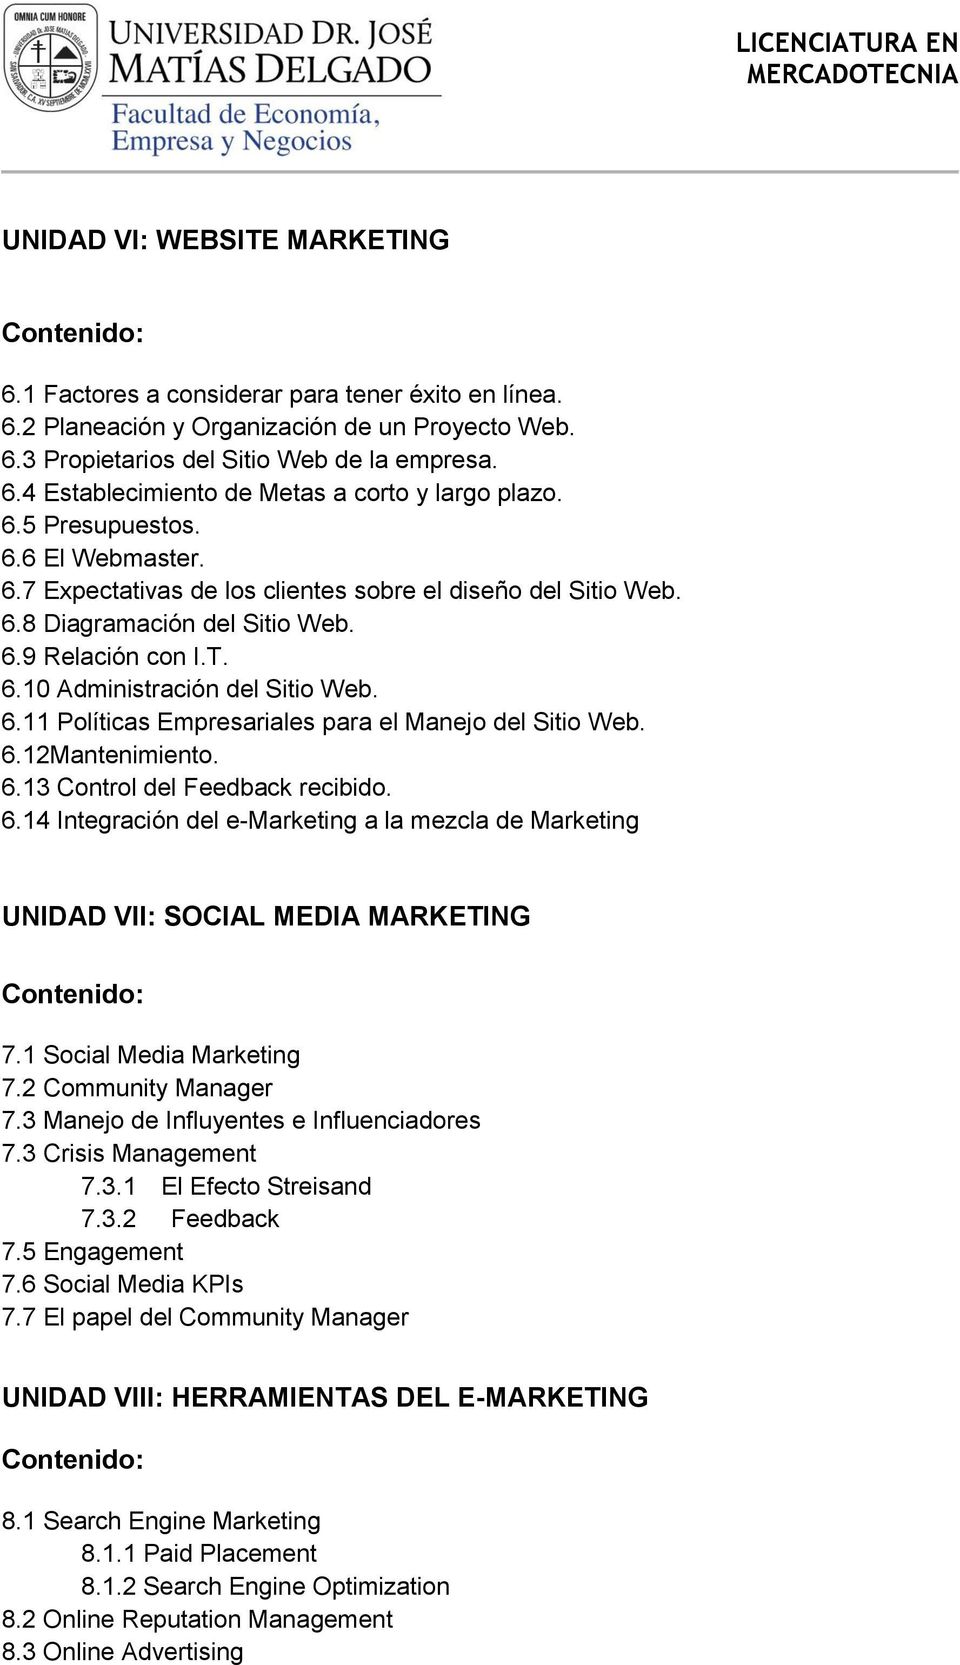 6.12Mantenimiento. 6.13 Control del Feedback recibido. 6.14 Integración del e-marketing a la mezcla de Marketing UNIDAD VII: SOCIAL MEDIA MARKETING 7.1 Social Media Marketing 7.2 Community Manager 7.